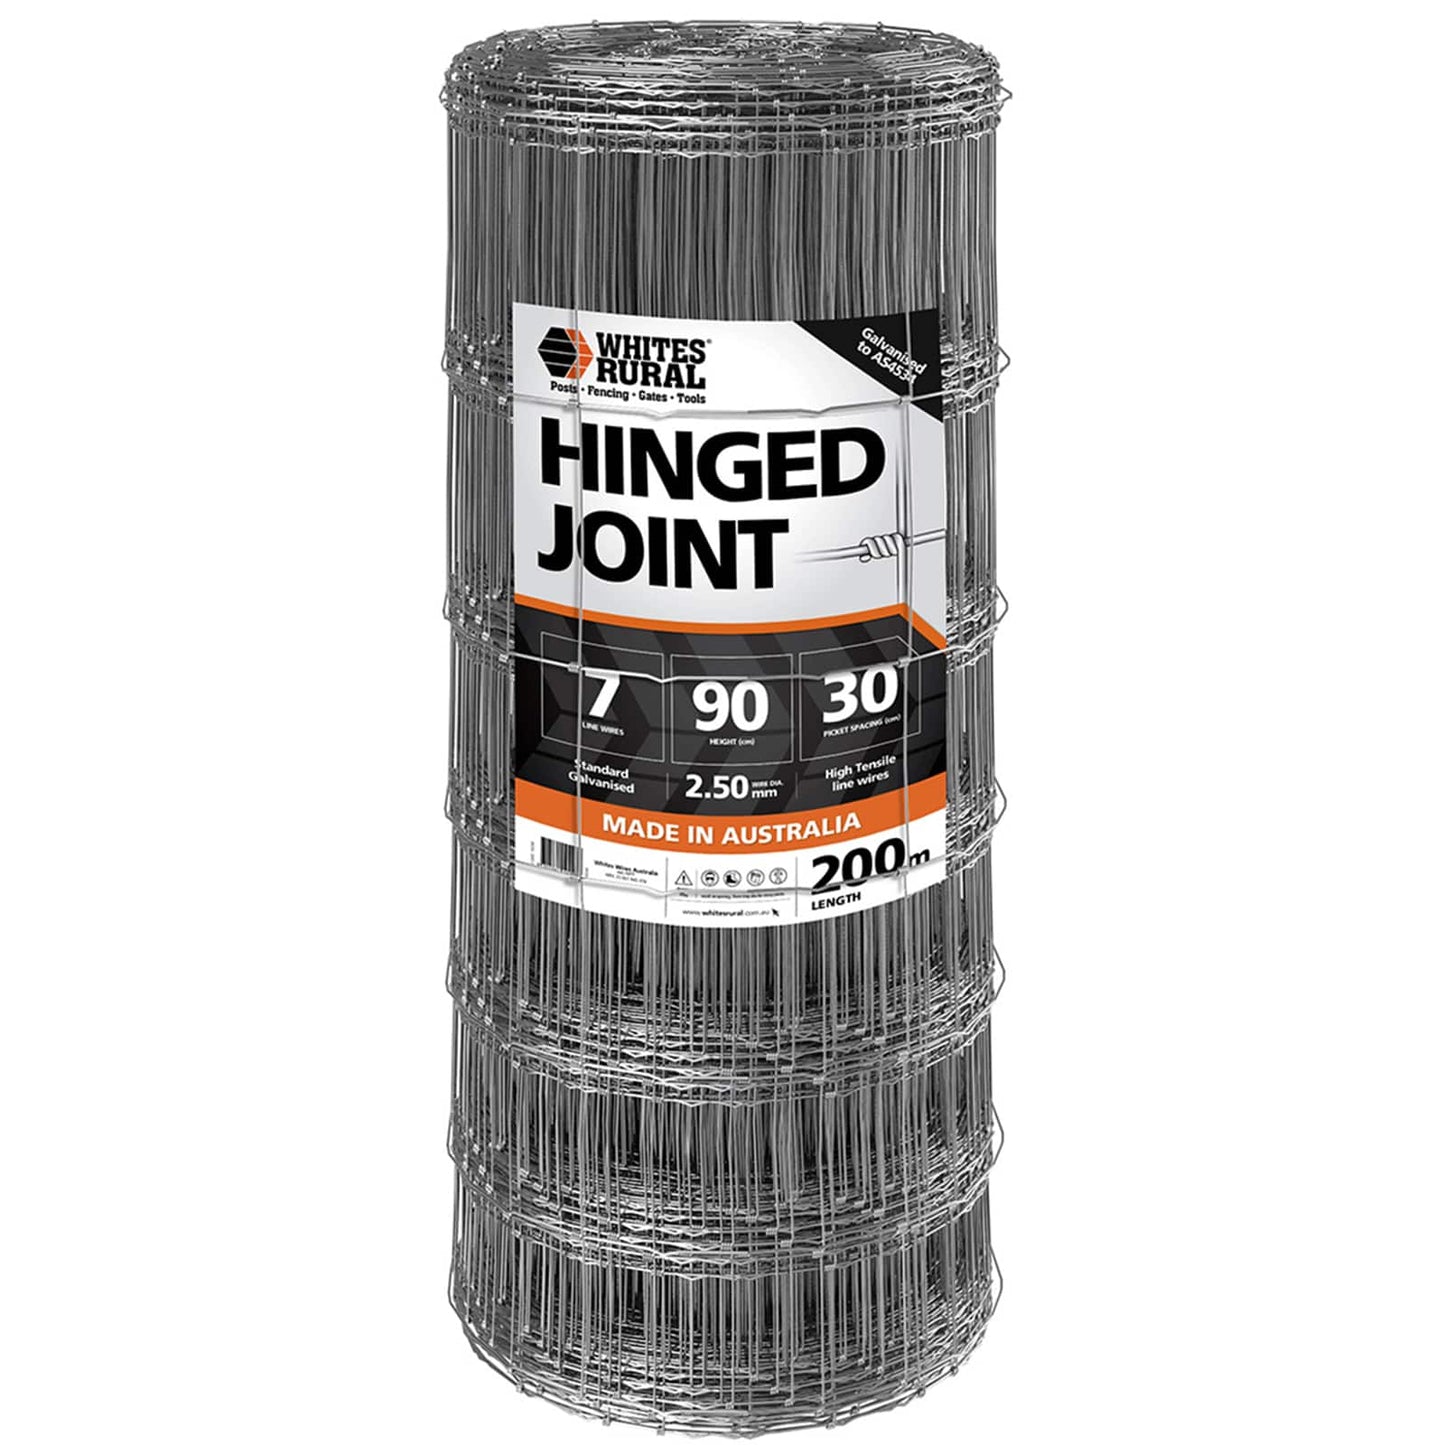 Hinge Joint 7/90/30 200m Whites - Woonona Petfood & Produce